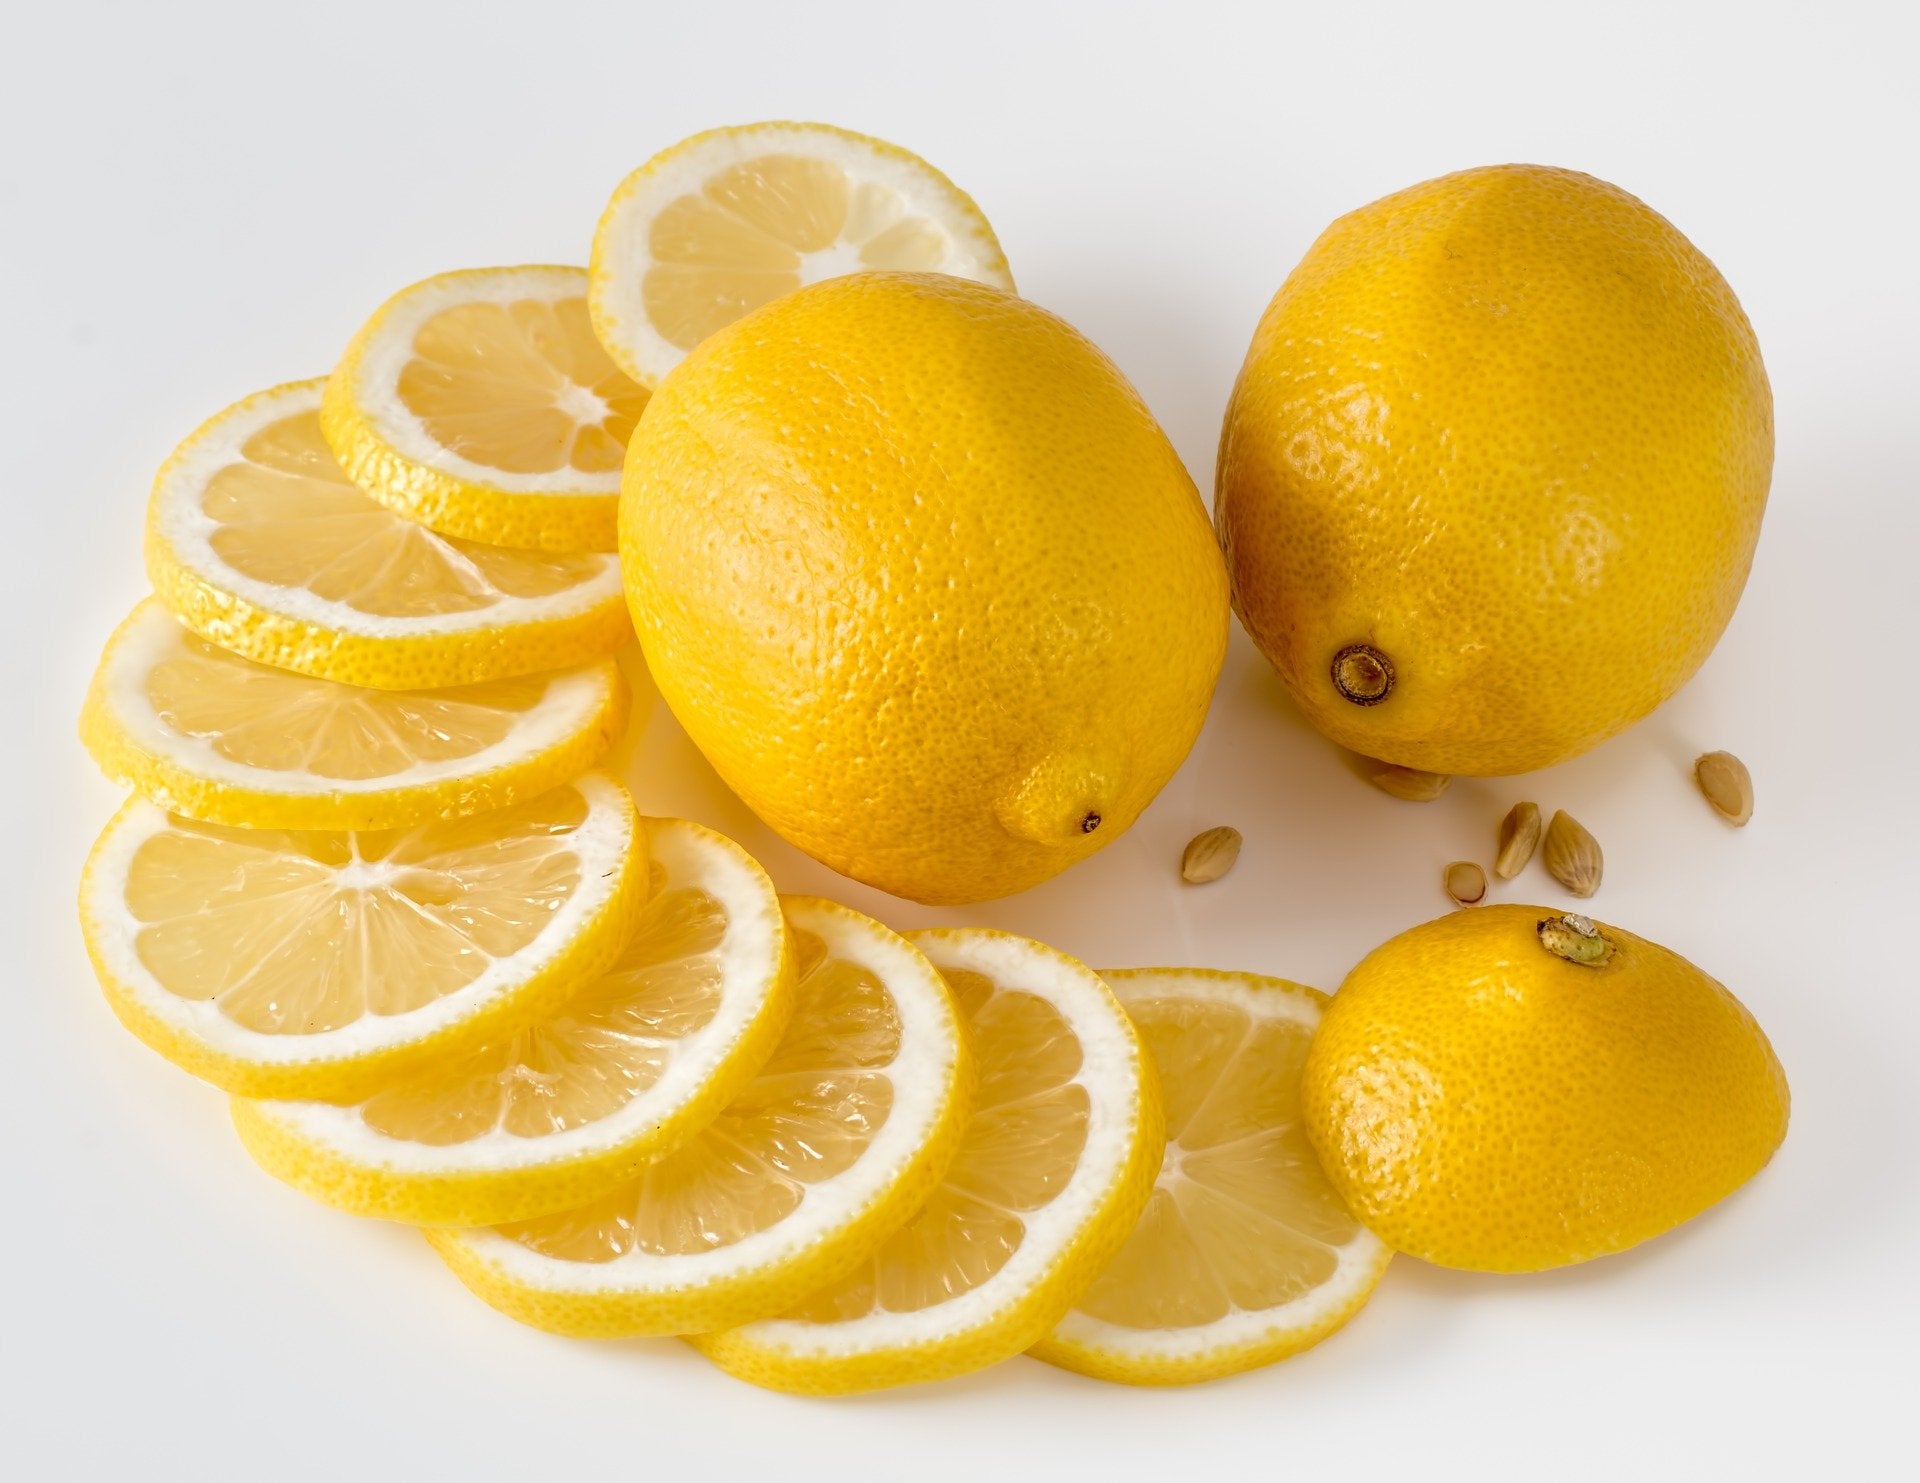 Jus de citron